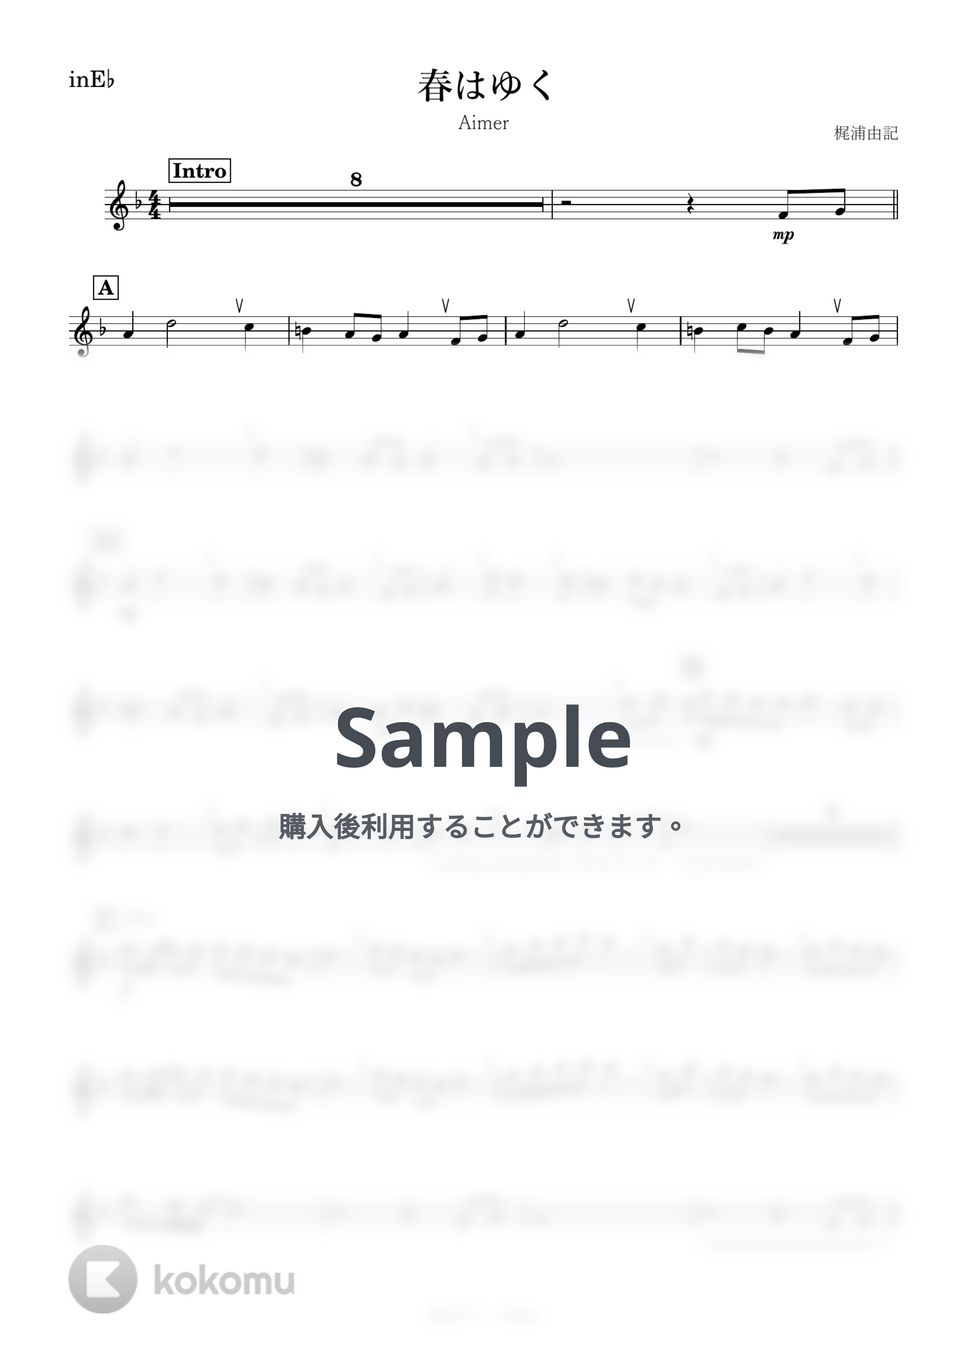 Aimer - 春はゆく (E♭) by kanamusic